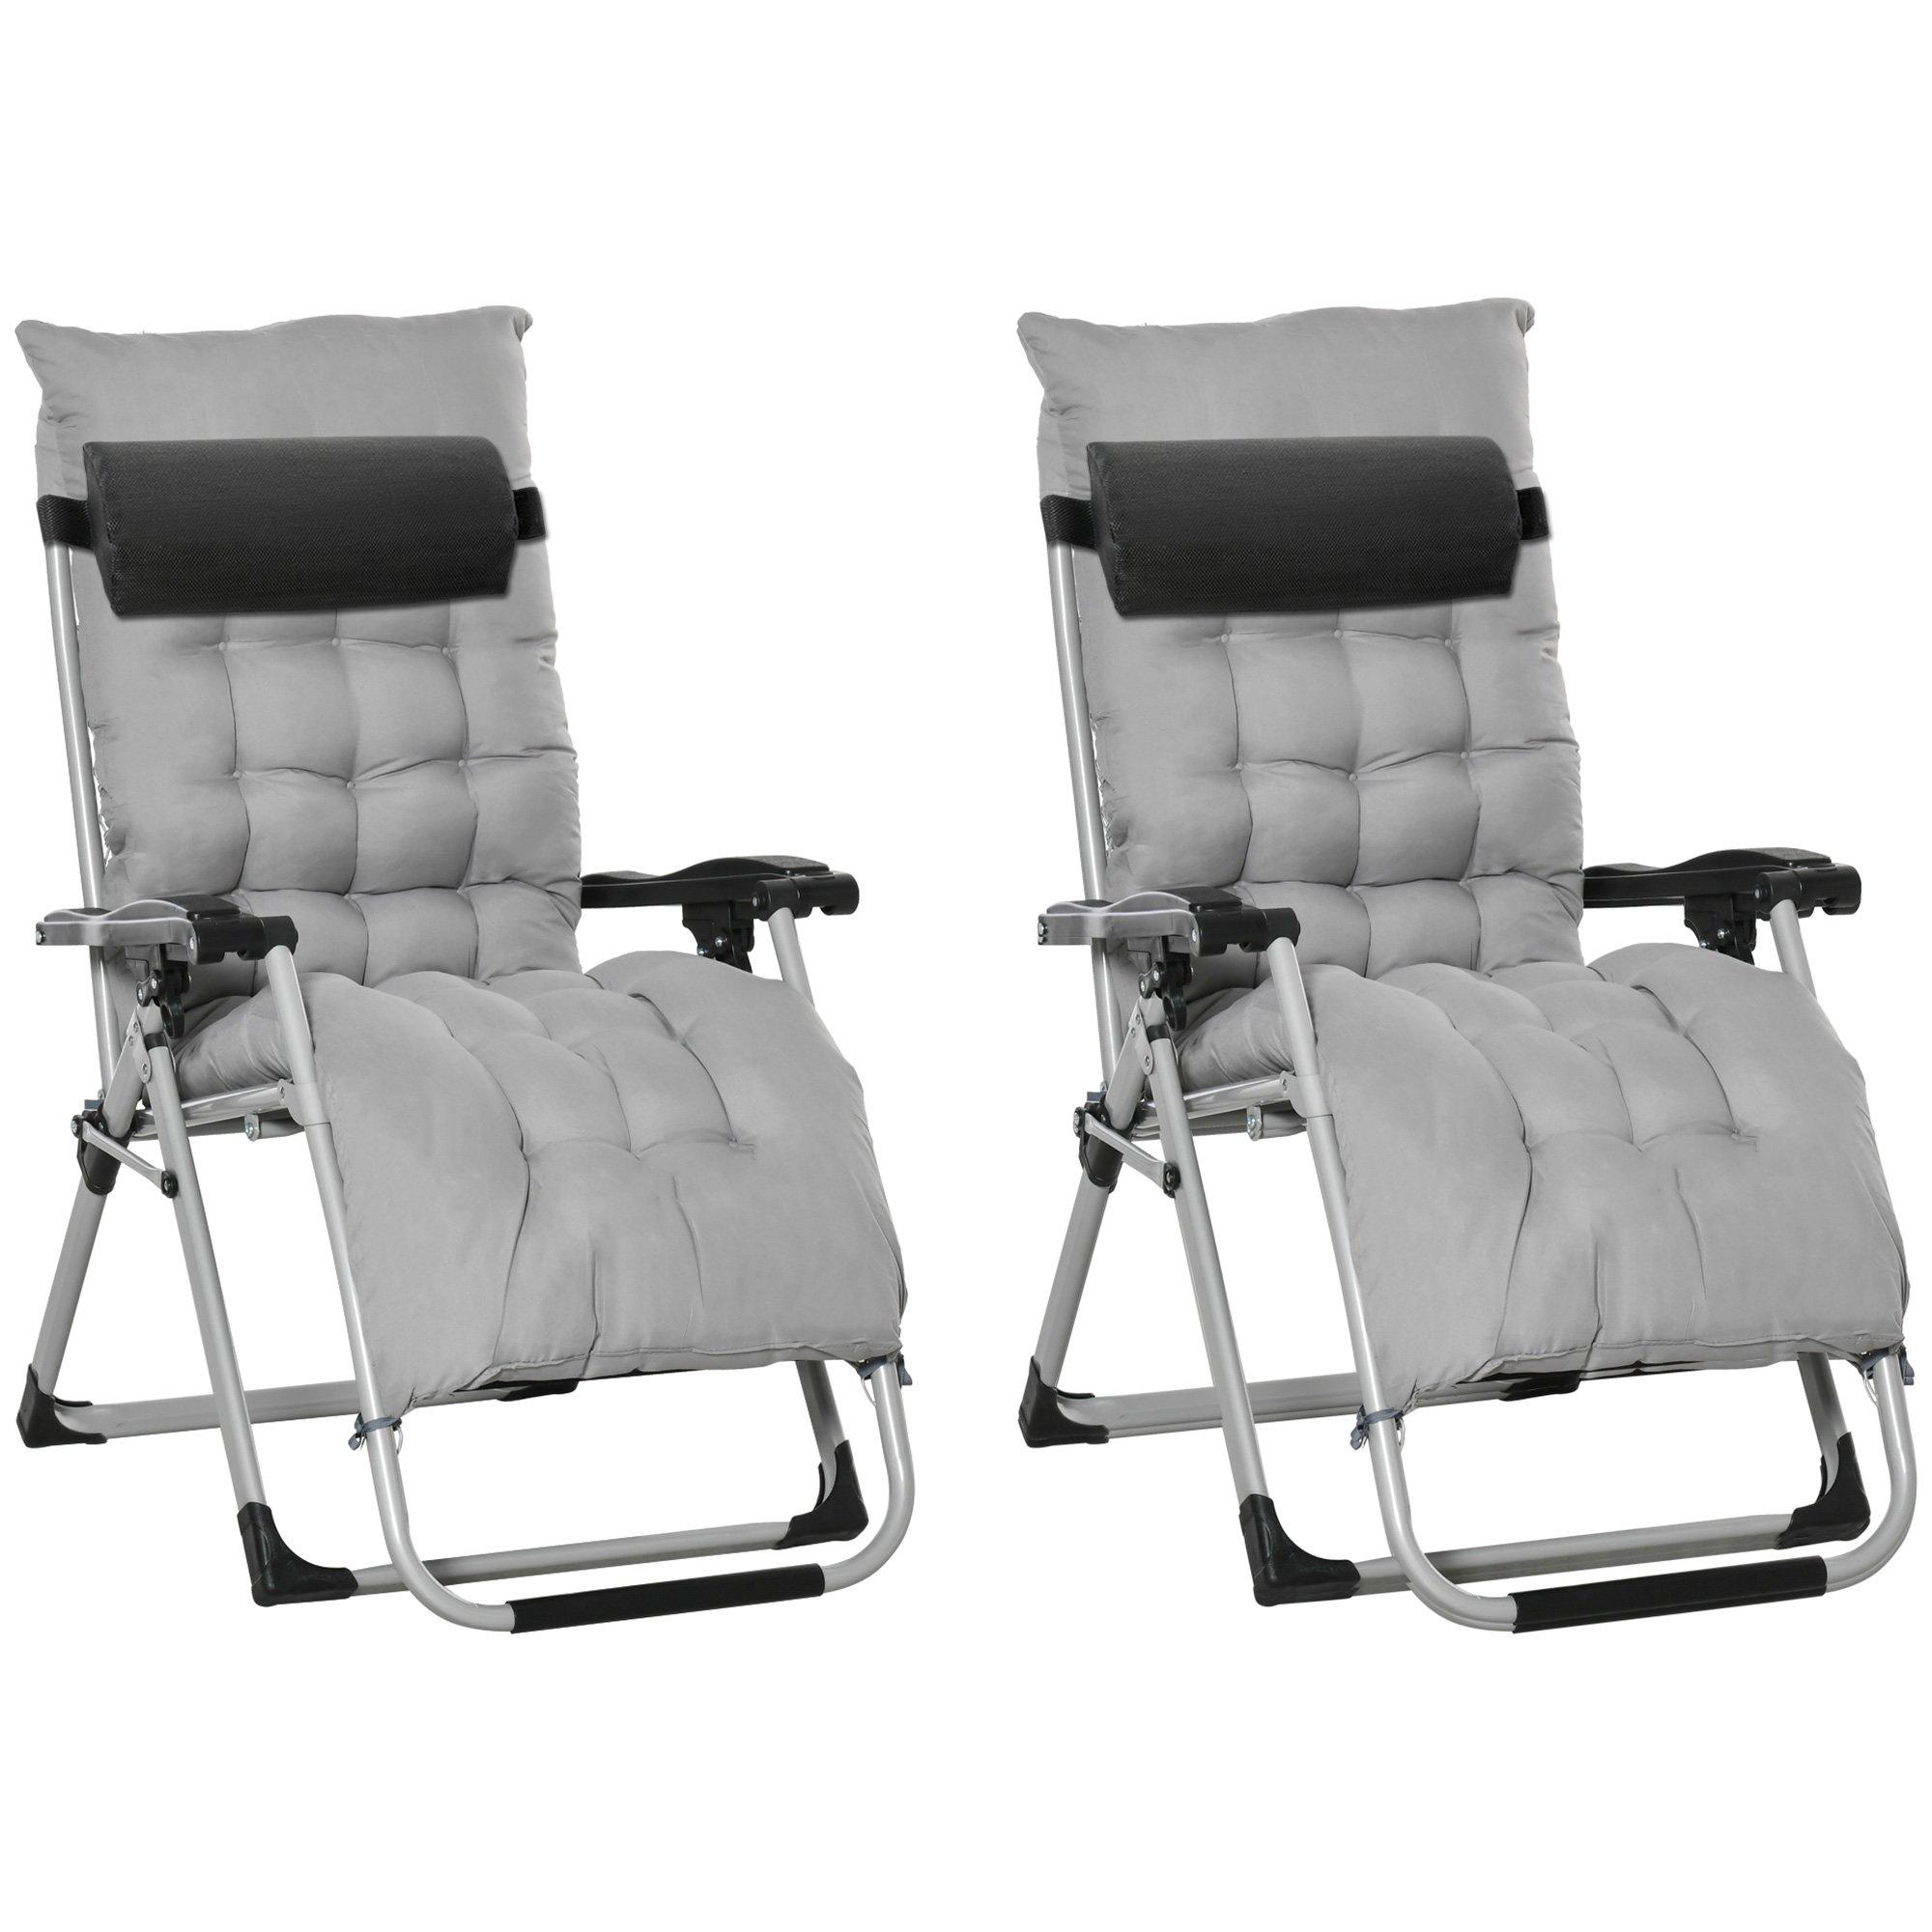 2 PCS Reclining Zero Gravity Chair Folding Lounger Cushion